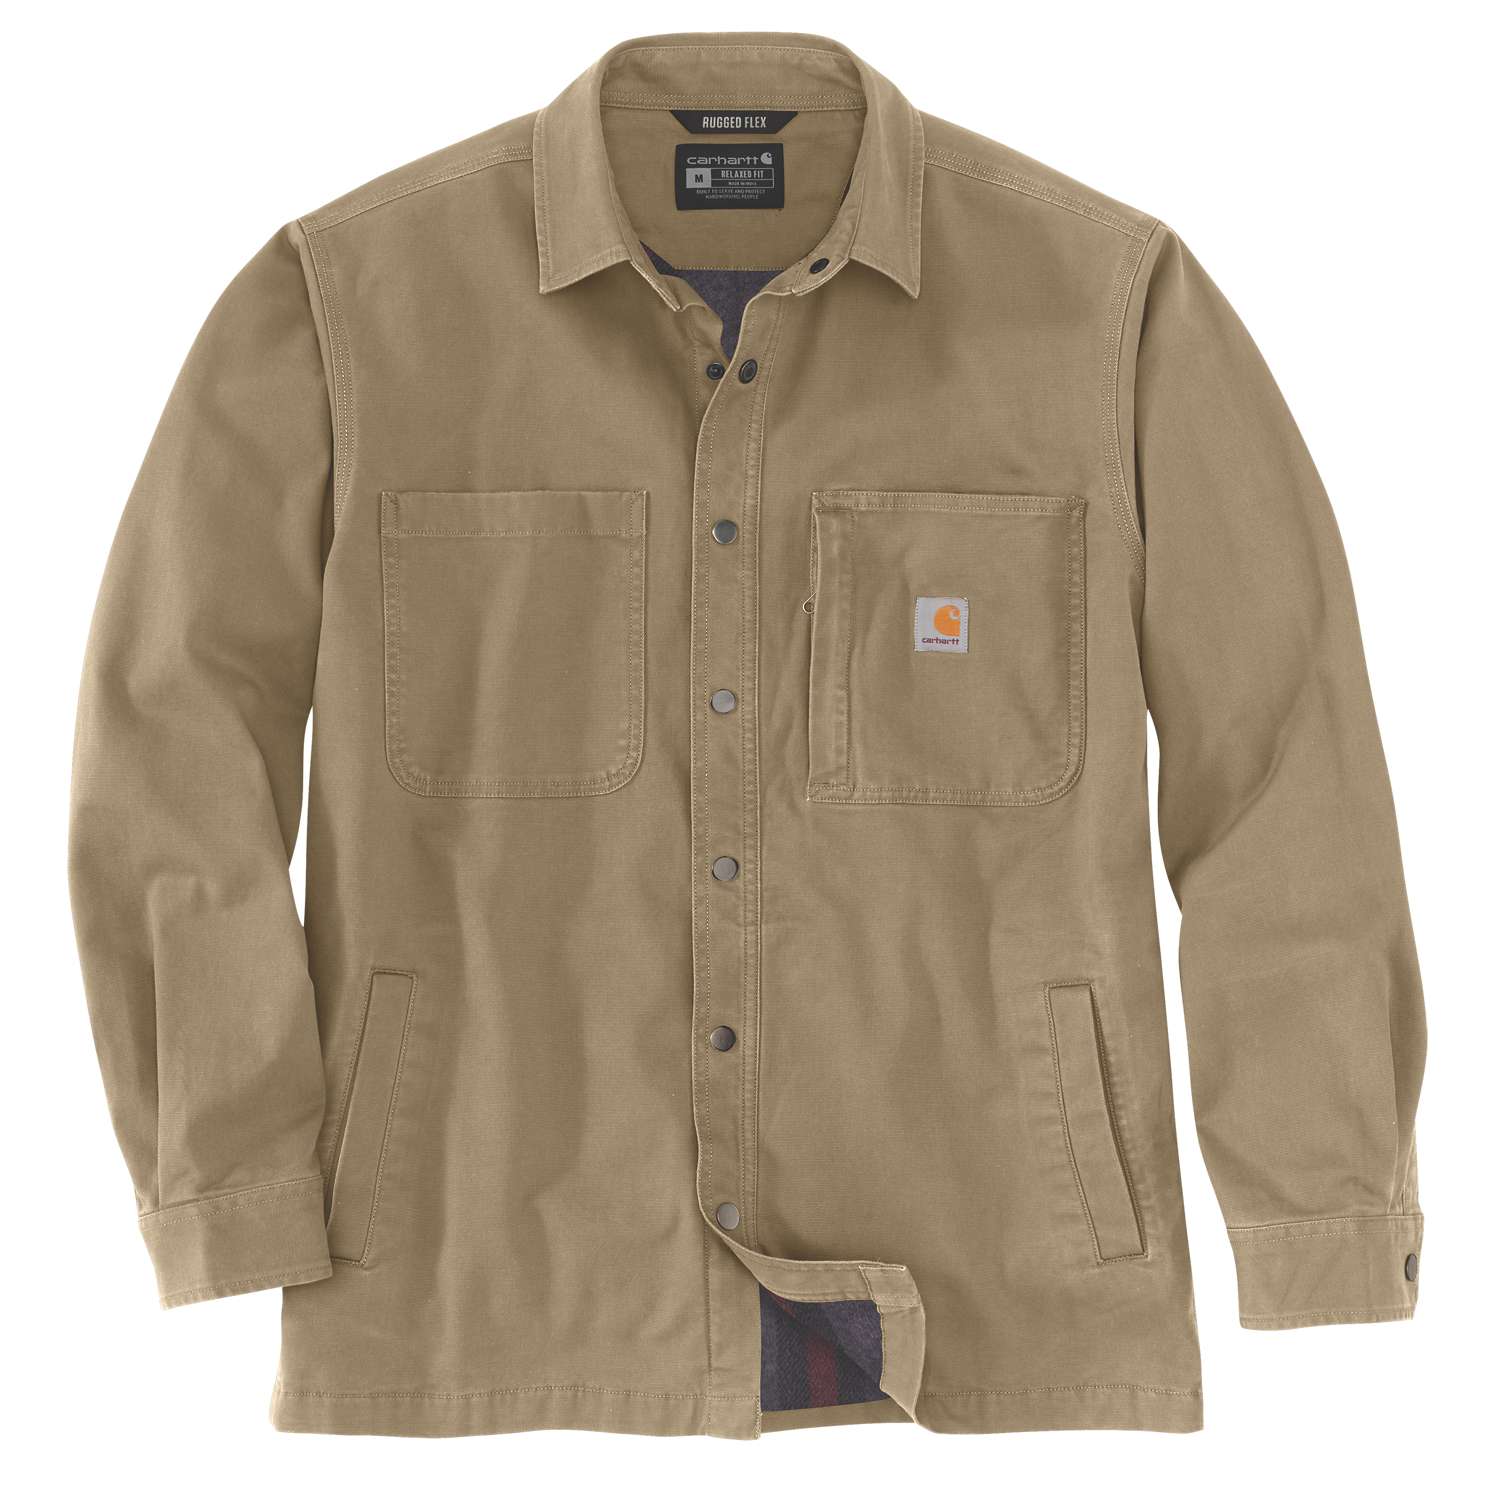 Carhartt Fleece Lined Canvas Shirt Jacket Fleece Lined Snap Front Shirt Jac